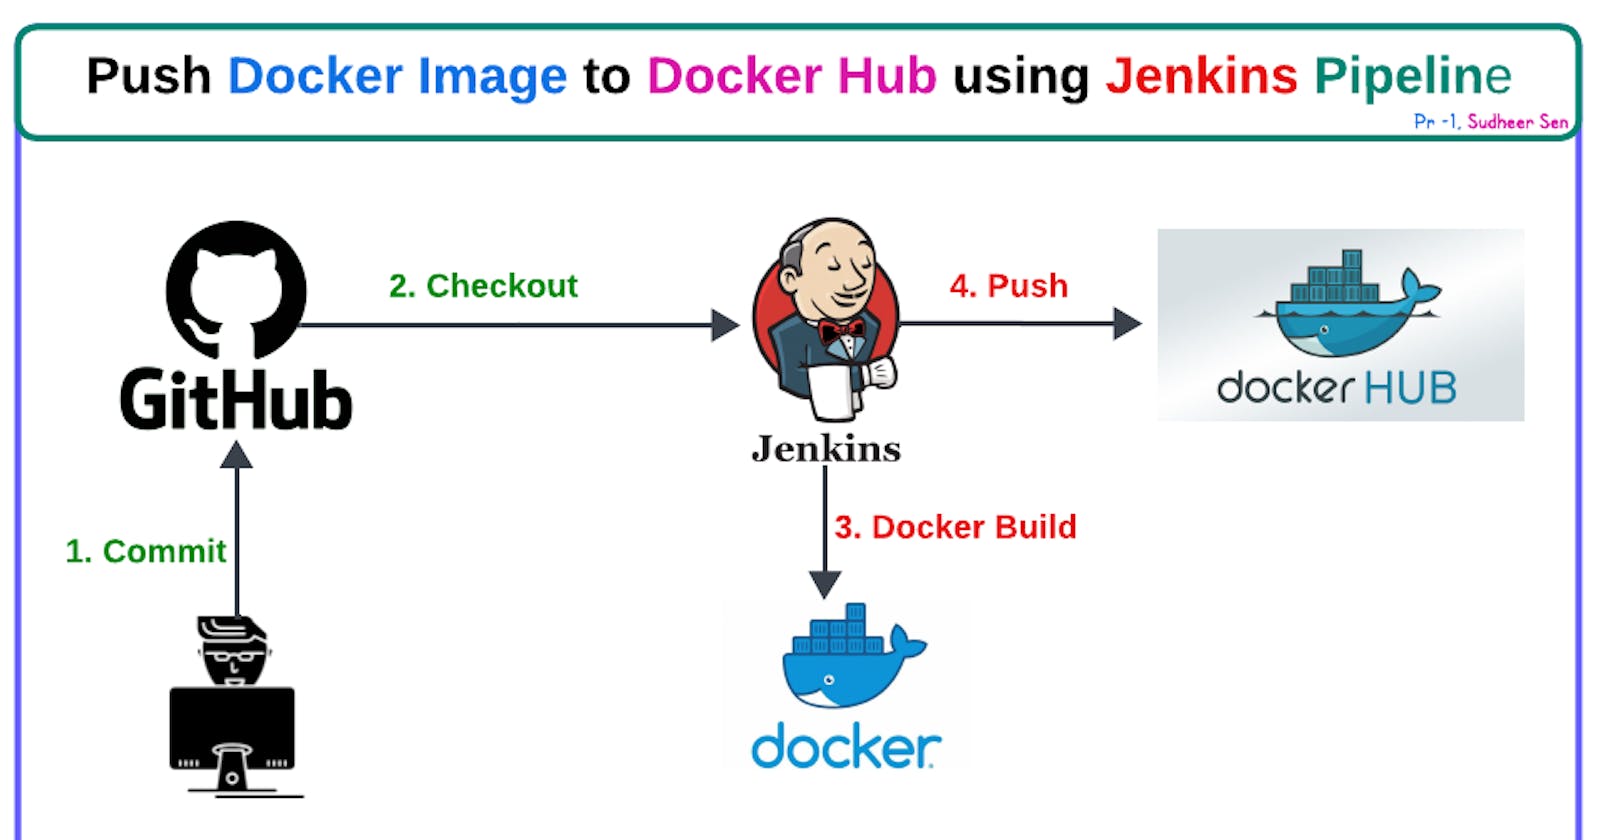 Project - 1. Push Docker Image to Docker Hub using Jenkins Pipeline